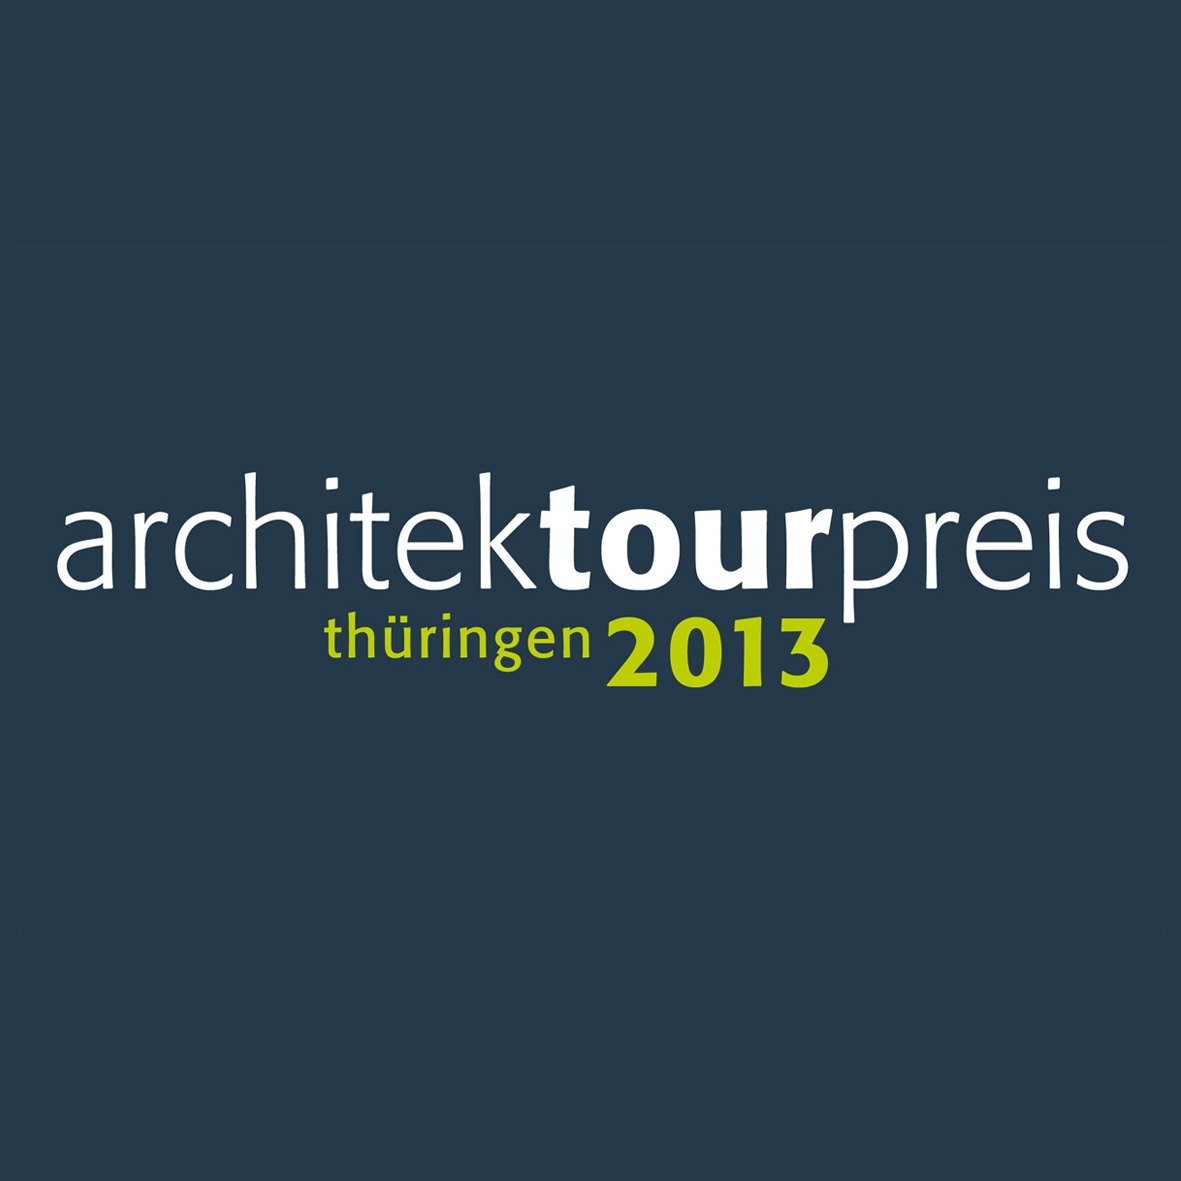 architektourpreis 2013, Bild: AKT